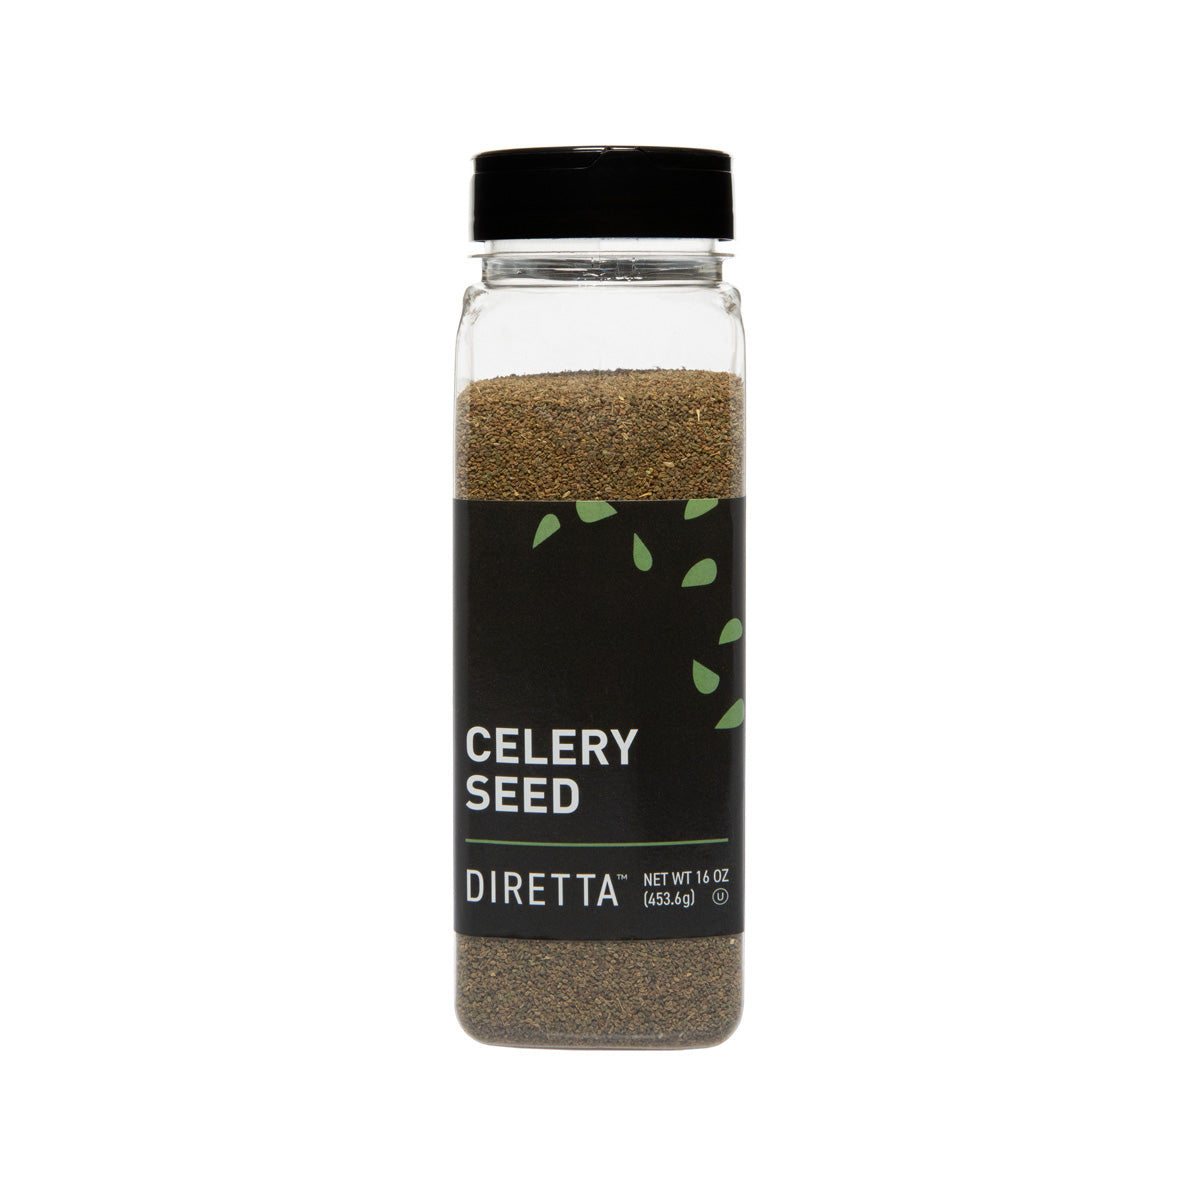 Diretta Celery Seed